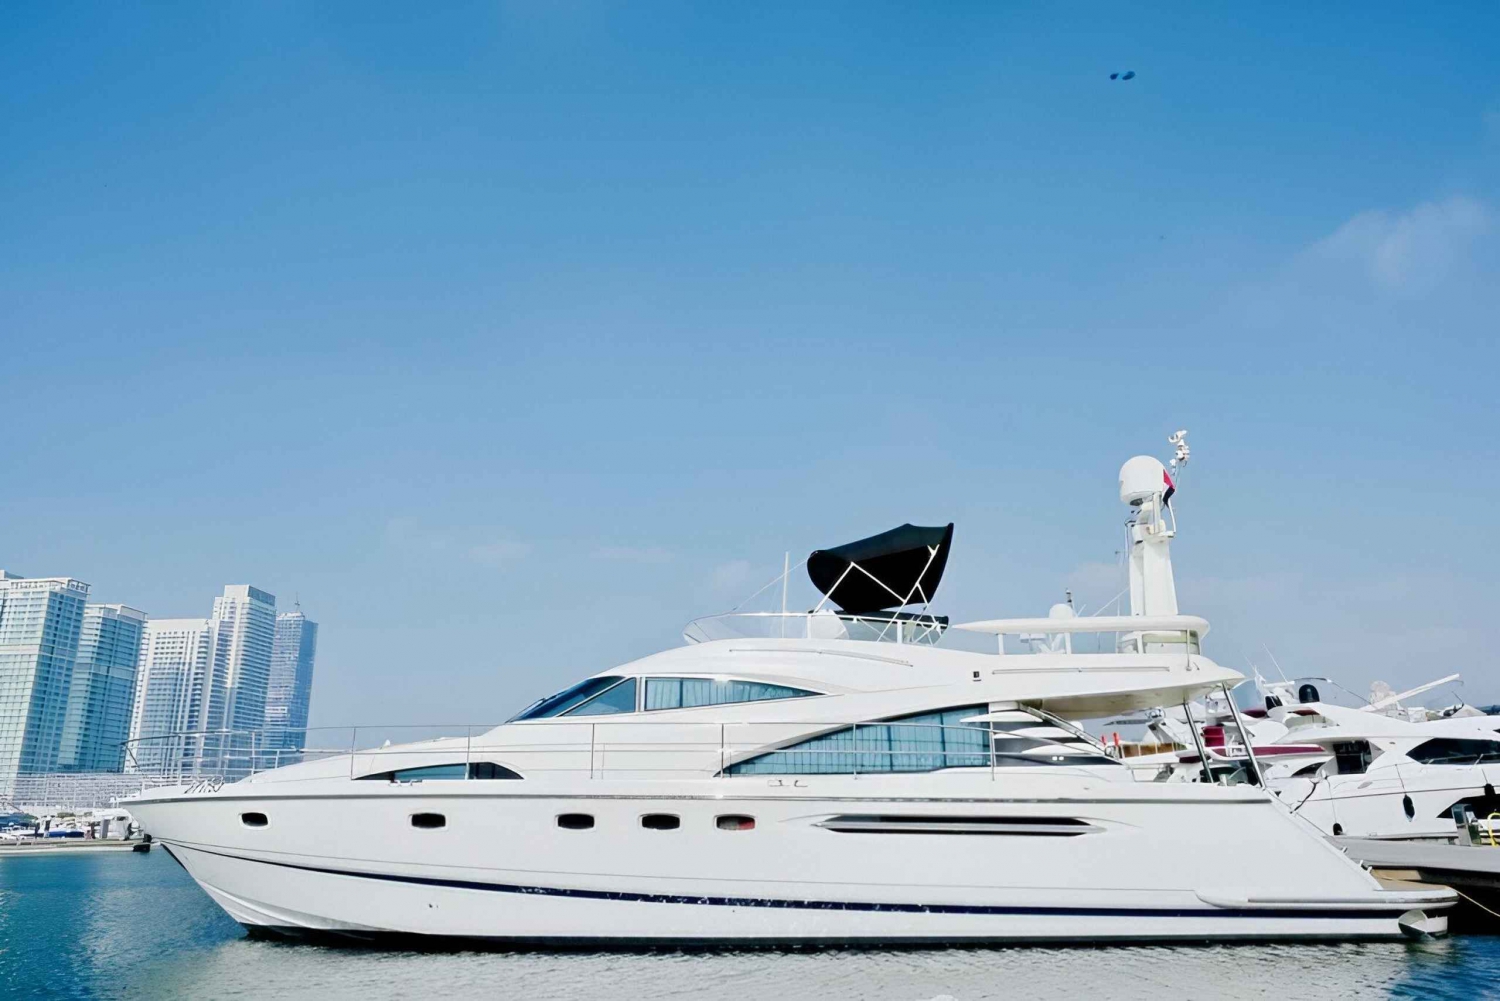 Dubai: Luxury Yacht Cruise with Free 1-Hour Cruise